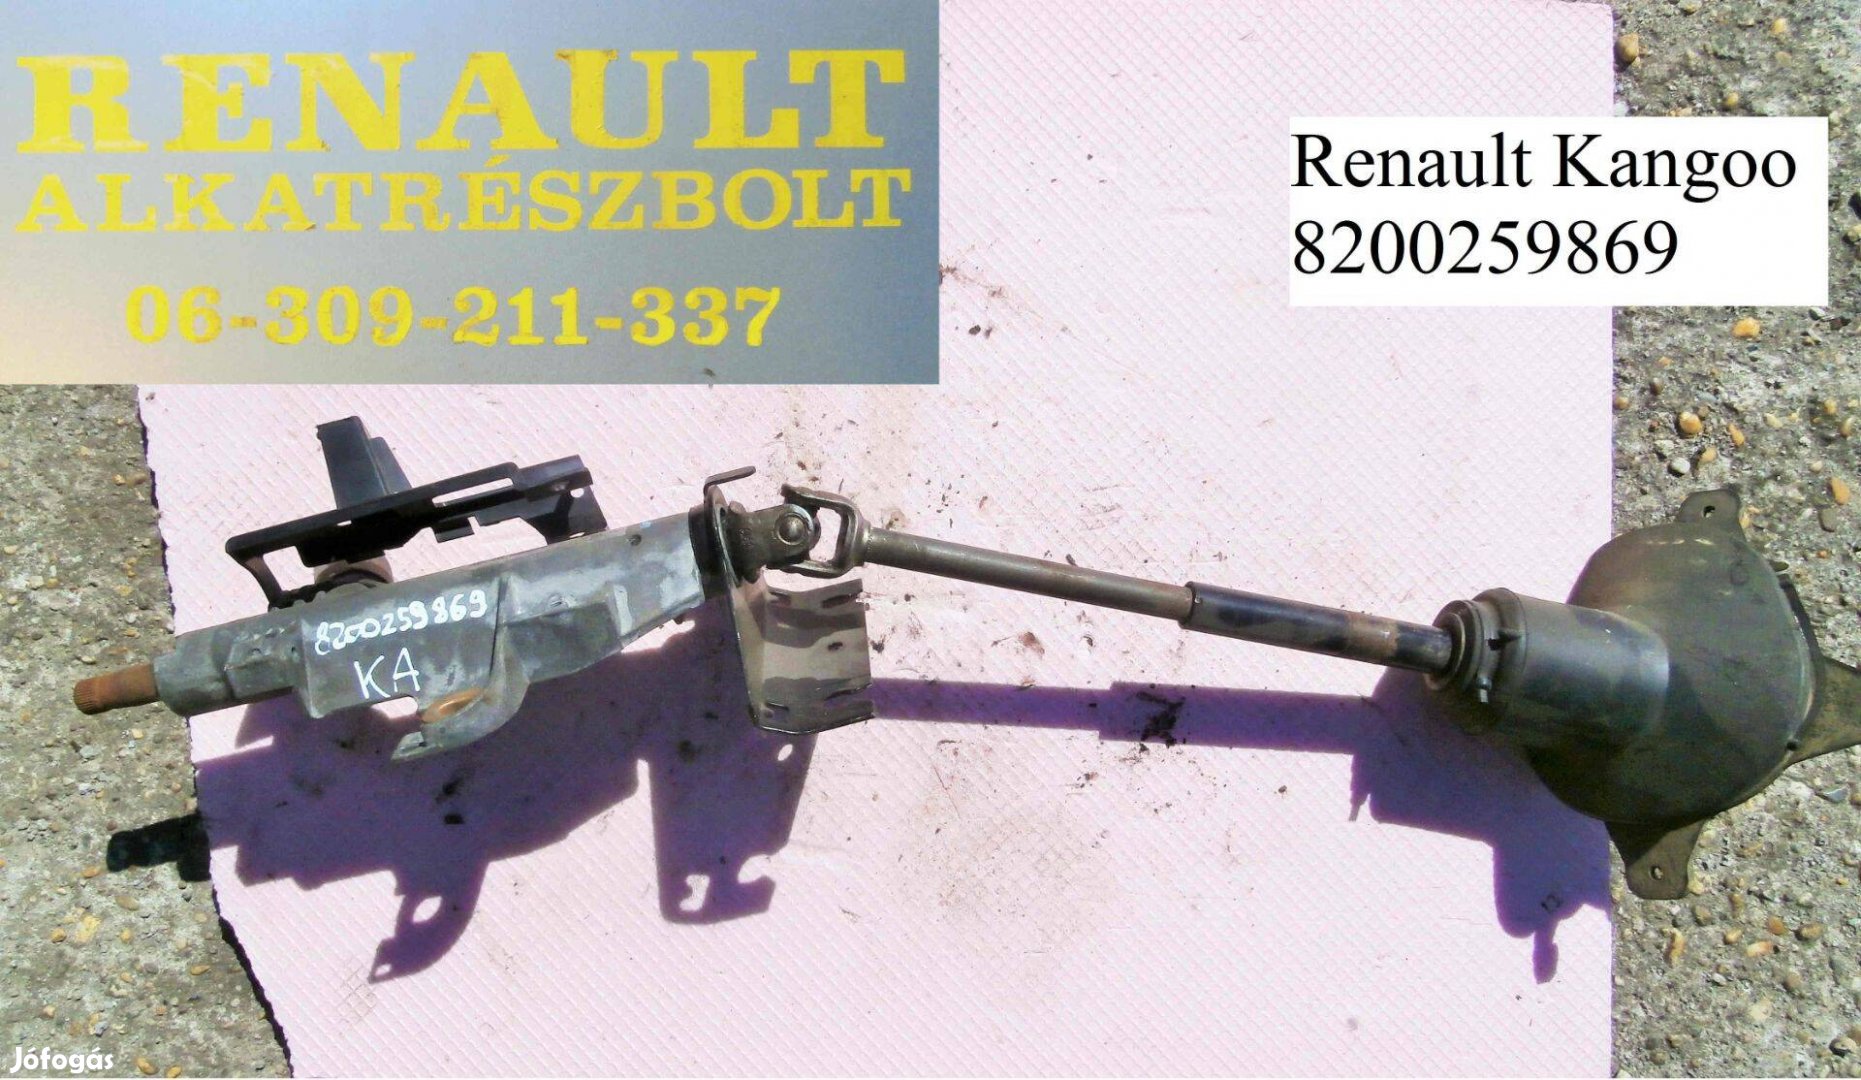 Renault Kangoo 8200259869 kormányoszlop